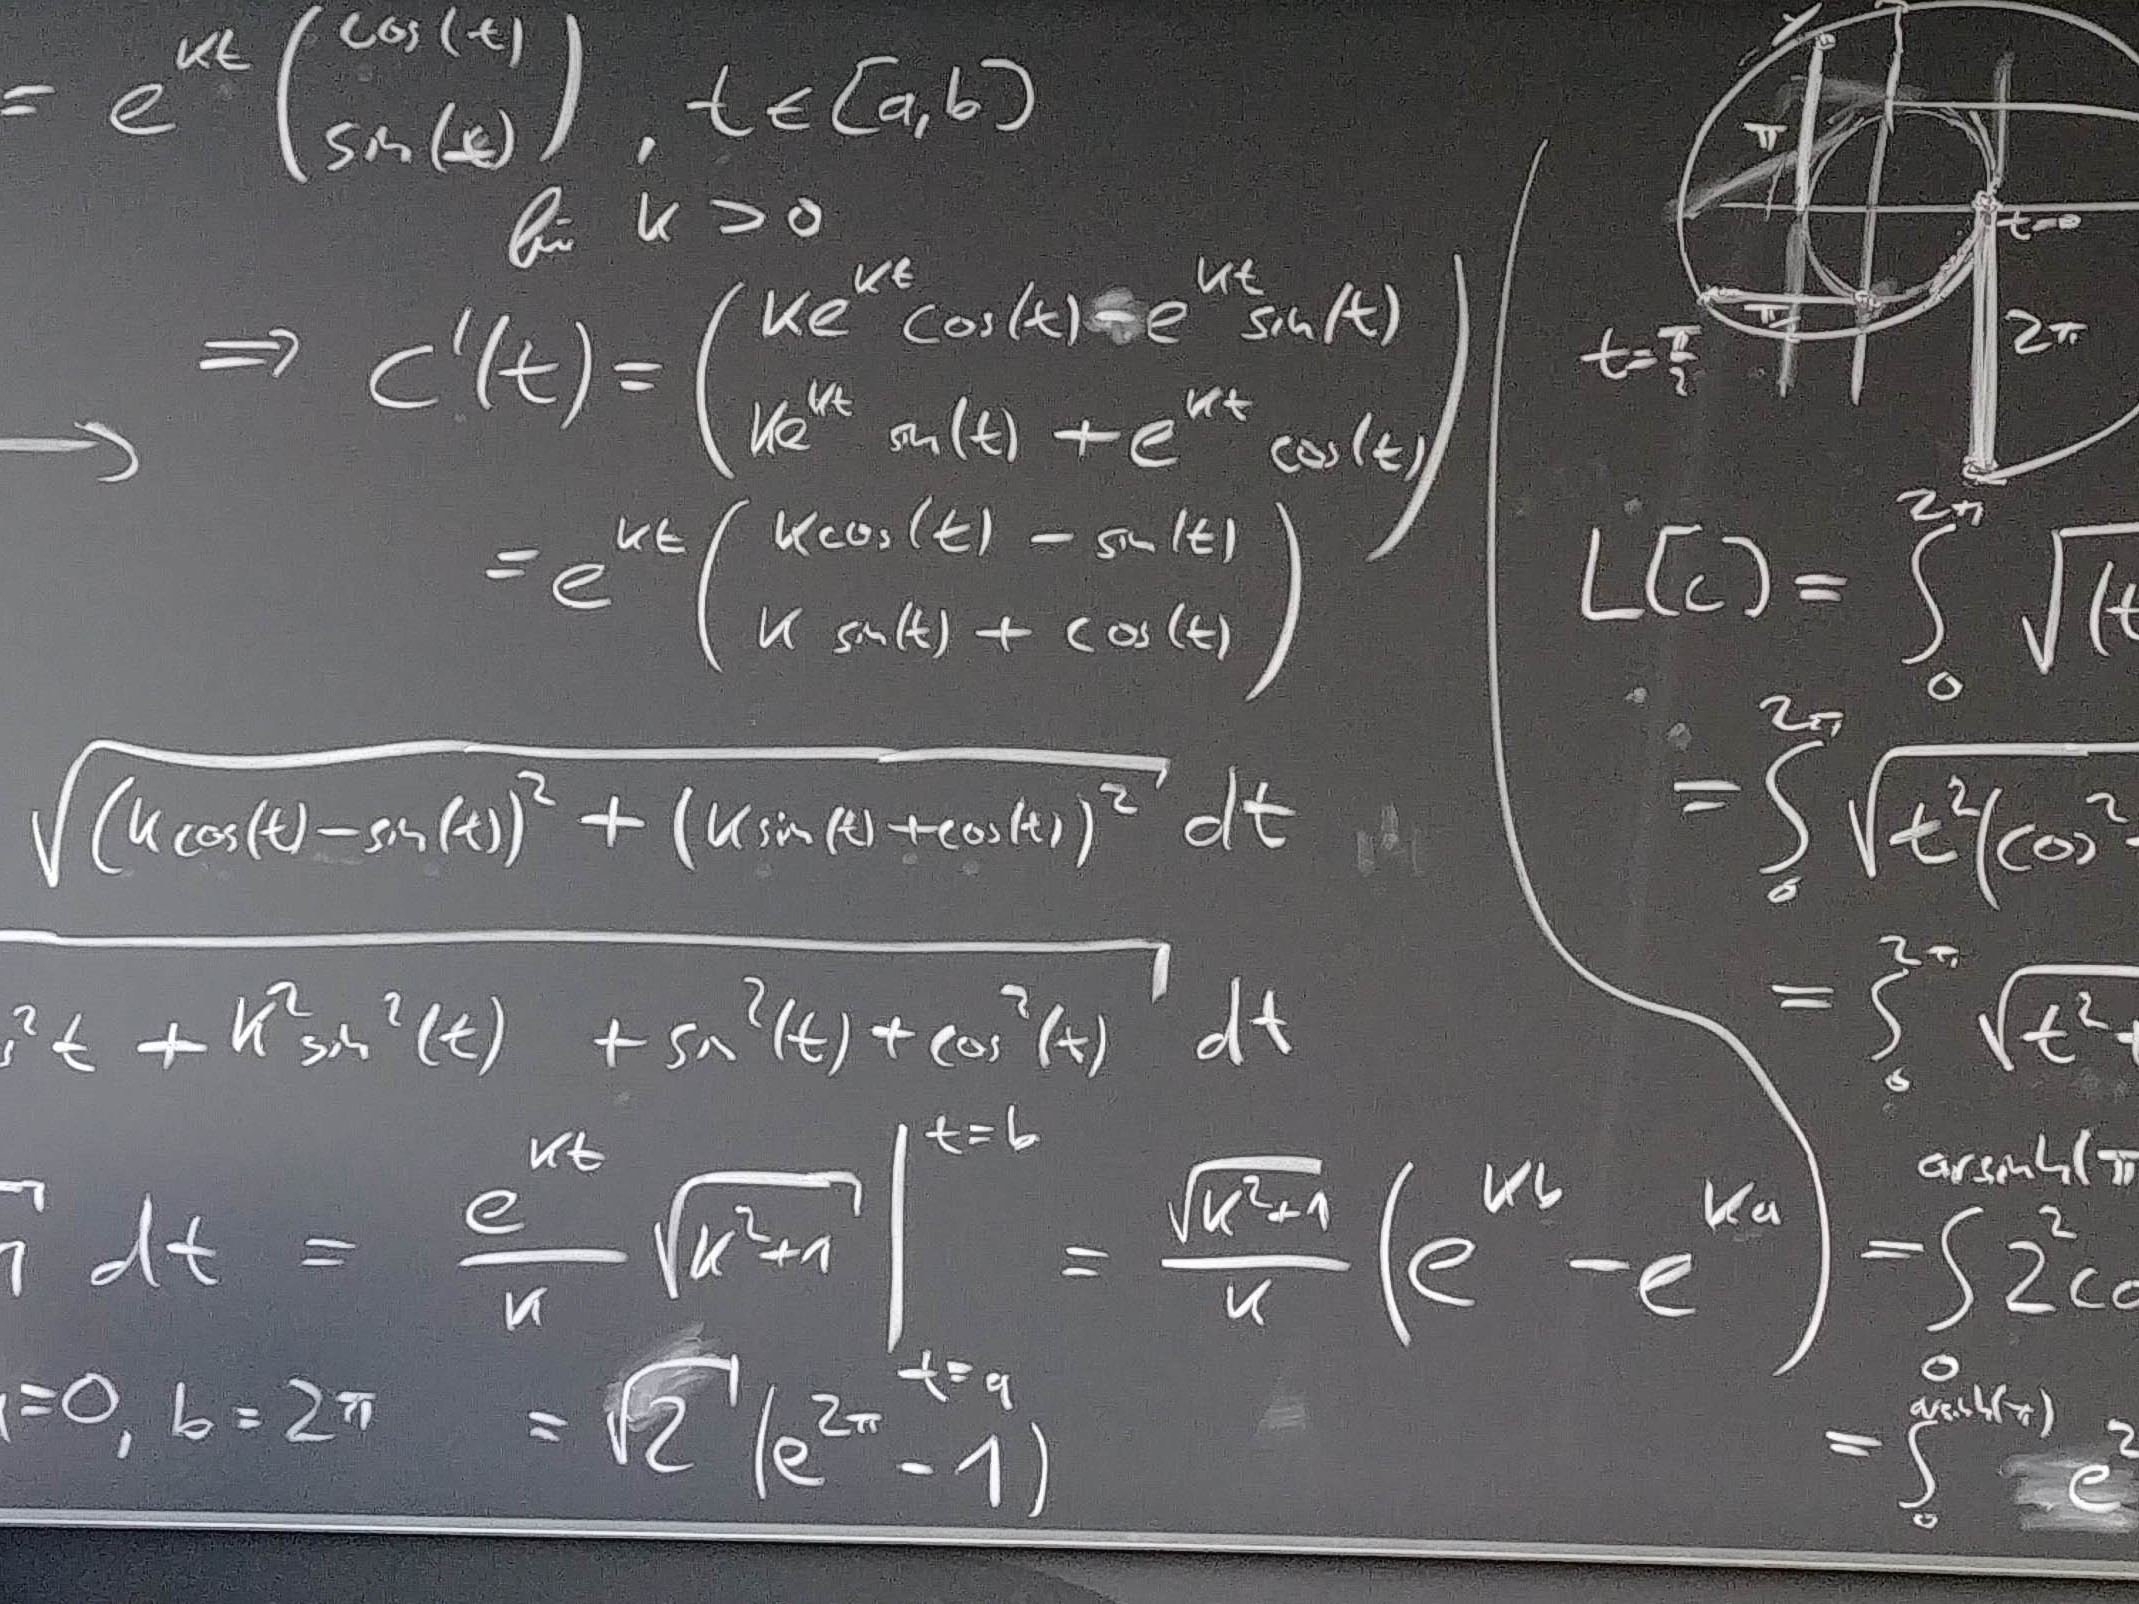 Auf dem Bild sieht man eine Tafel mit komplexen mathematischen Formeln.